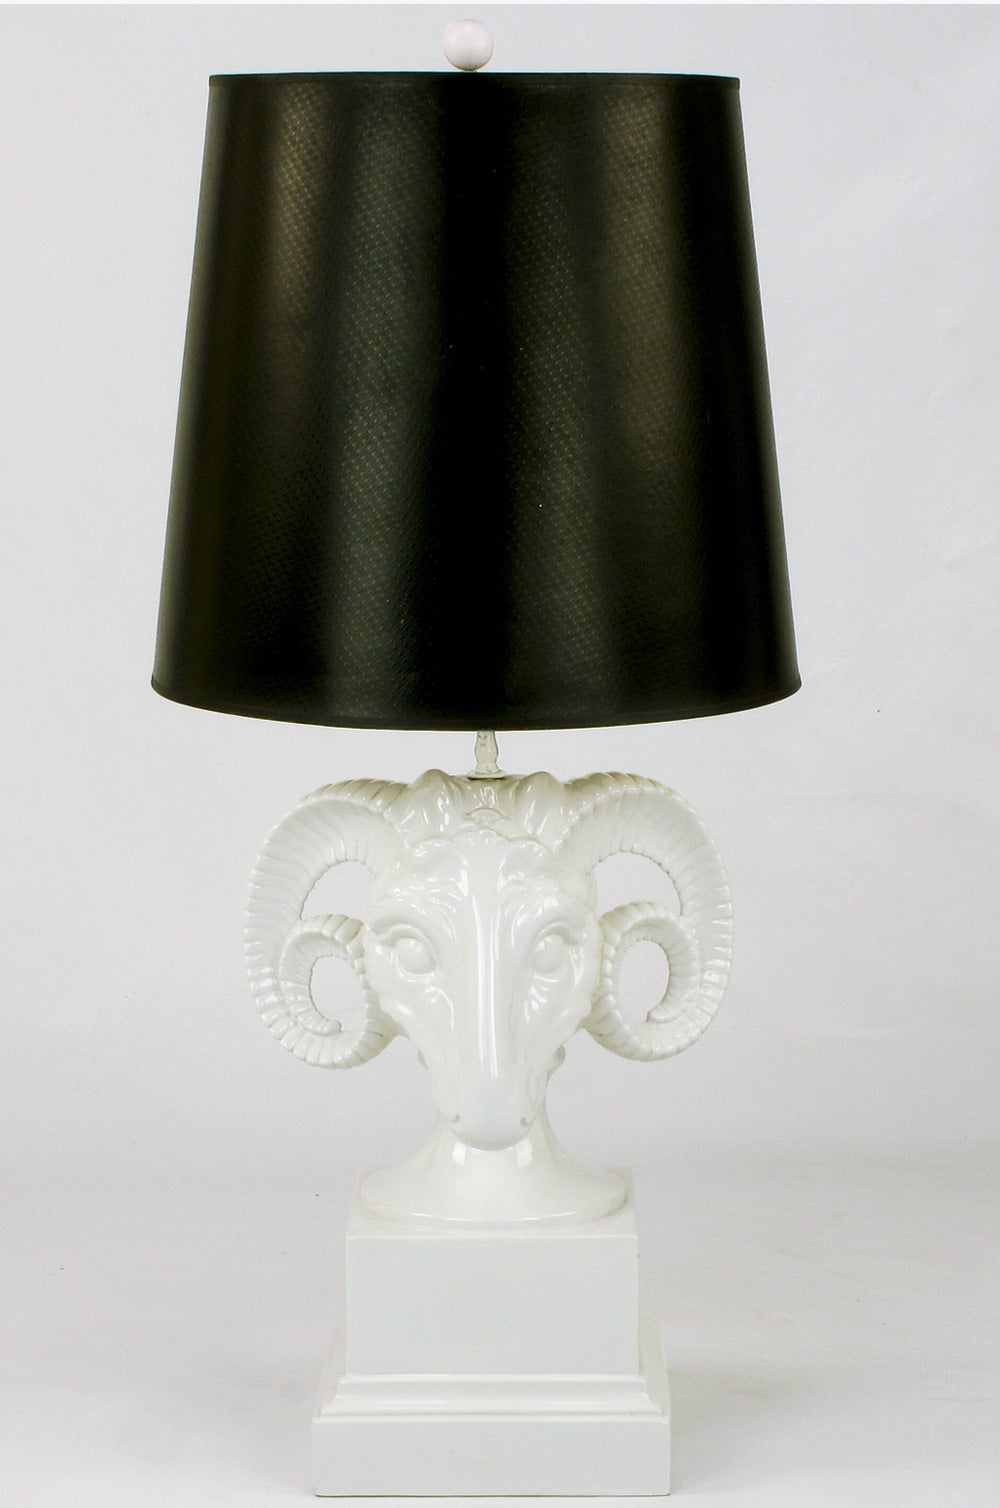 Detaillierte Widderkopf-Tischlampe aus weiß glasierter Keramik. Ursprünglich verkauft durch Chapman Manufacturing Co. Chicago IL. Wird ohne Schirm verkauft. Neu verkabelt.